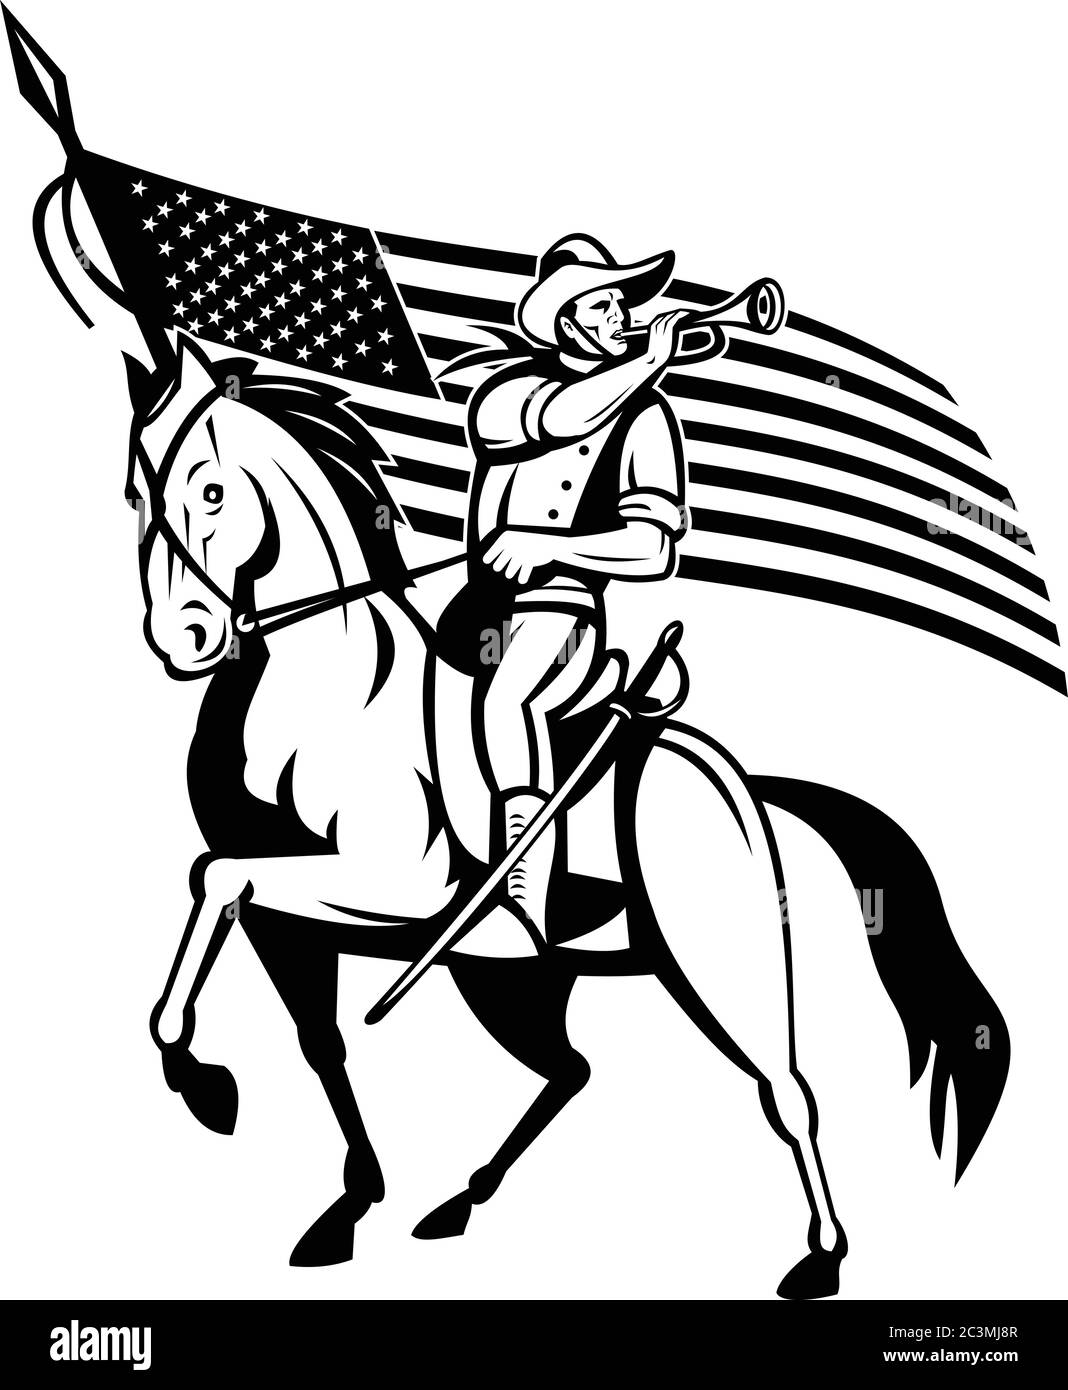 Illustration de style rétro d'un Cavalry des États-Unis, la force montée des États-Unis d'Amérique avec le bugle et les étoiles et rayures américaines des États-Unis f Illustration de Vecteur